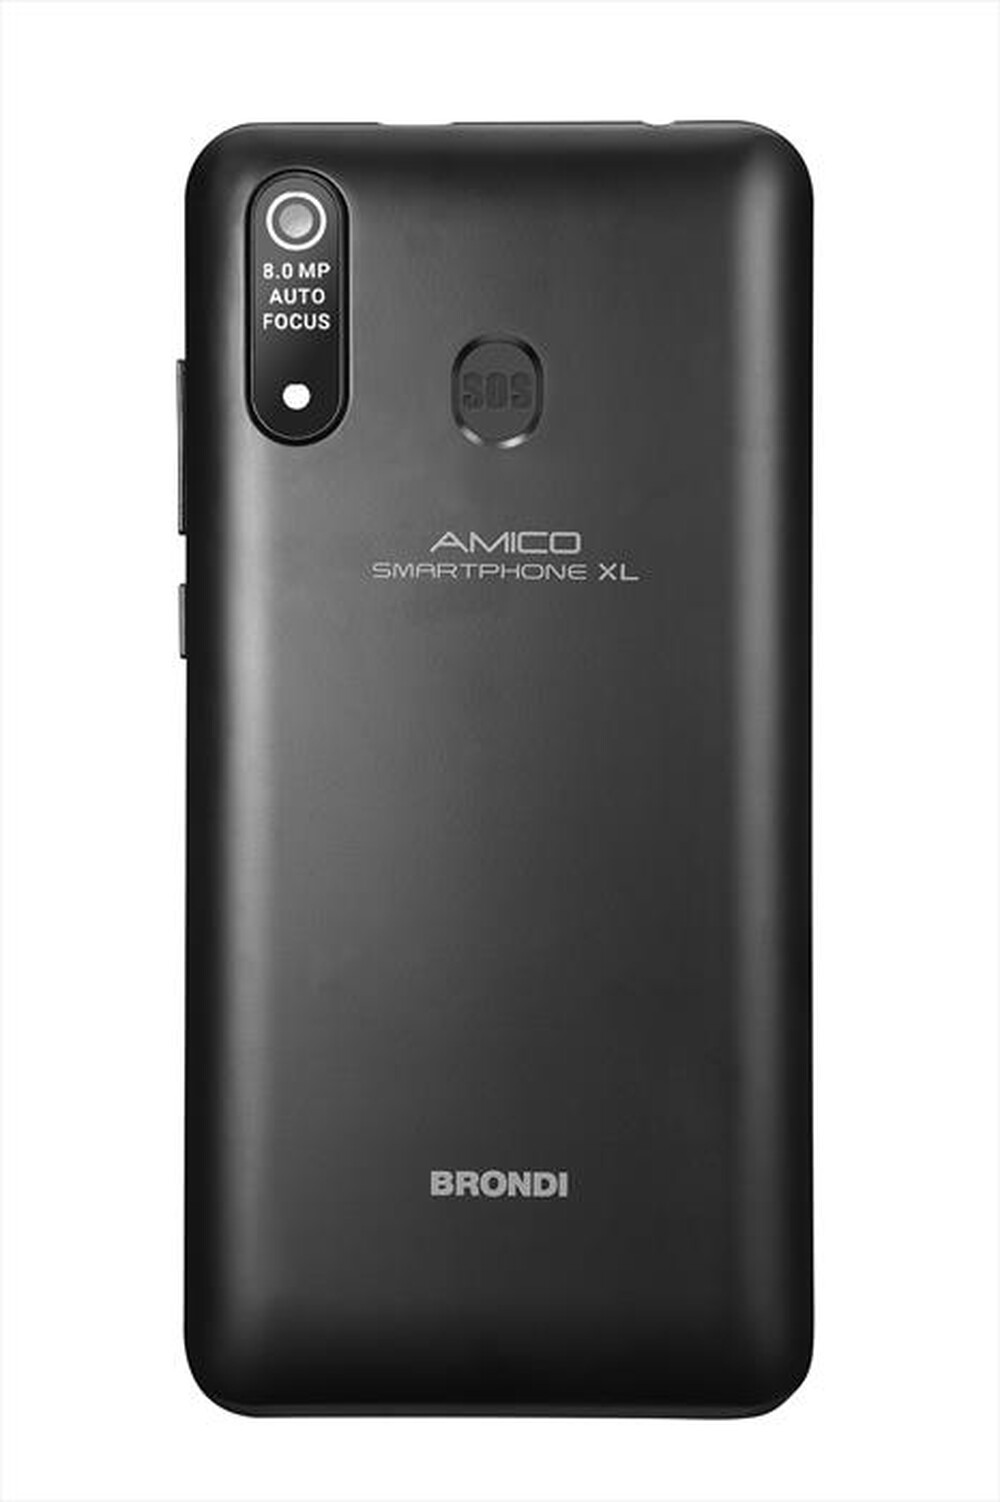 "BRONDI - AMICO SMARTPHONE XL-Nero"